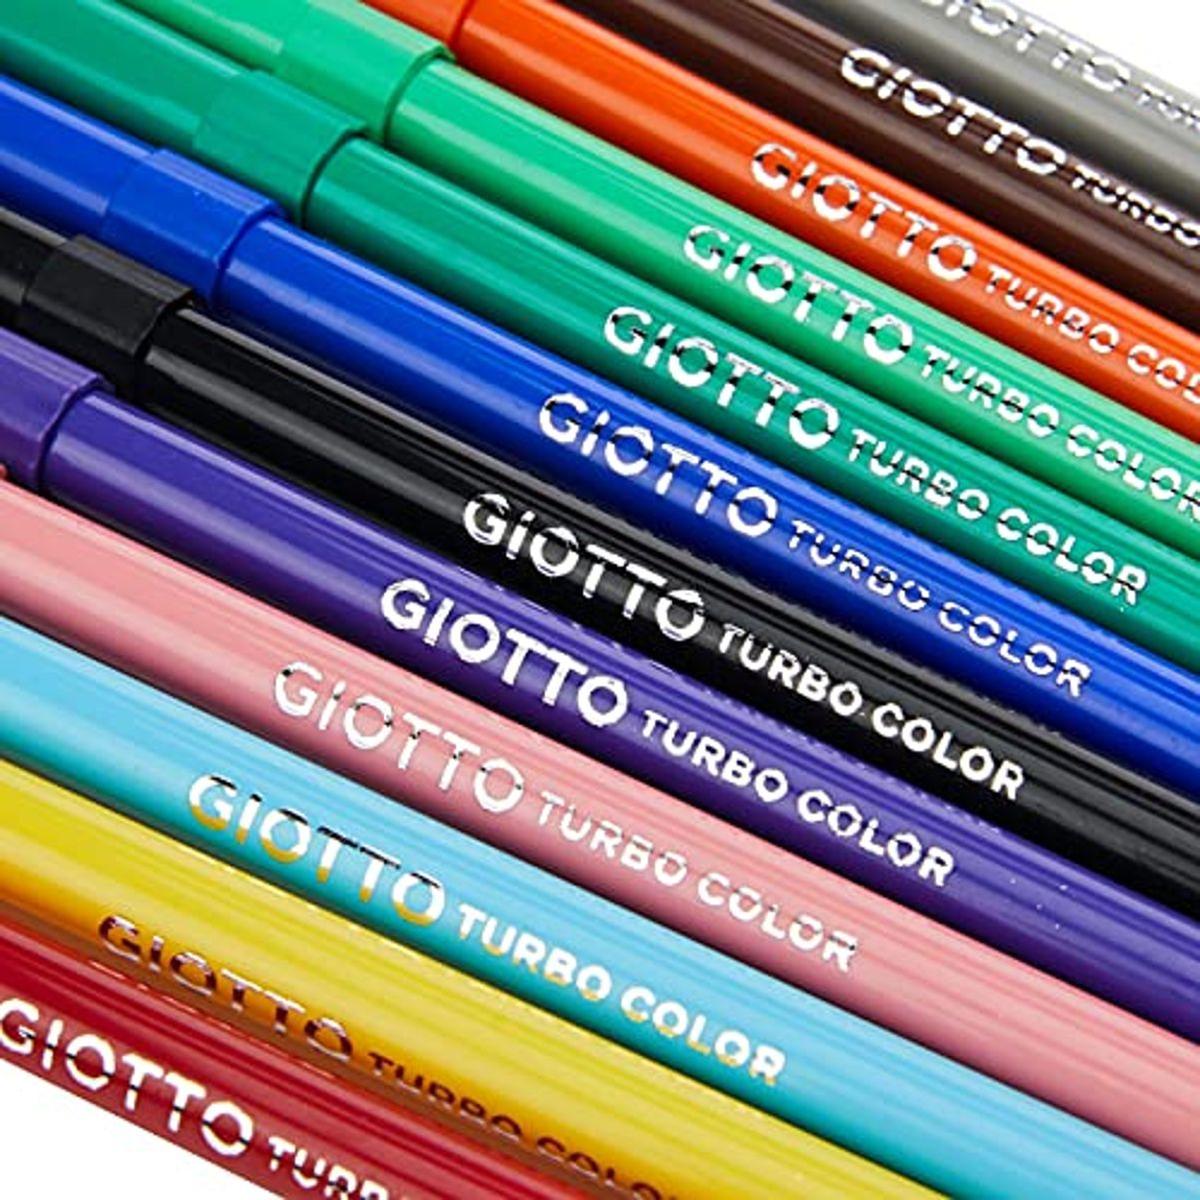 Paquete 12 rotuladores Giotto Turbo Maxi - Para decorar - Los mejores  precios